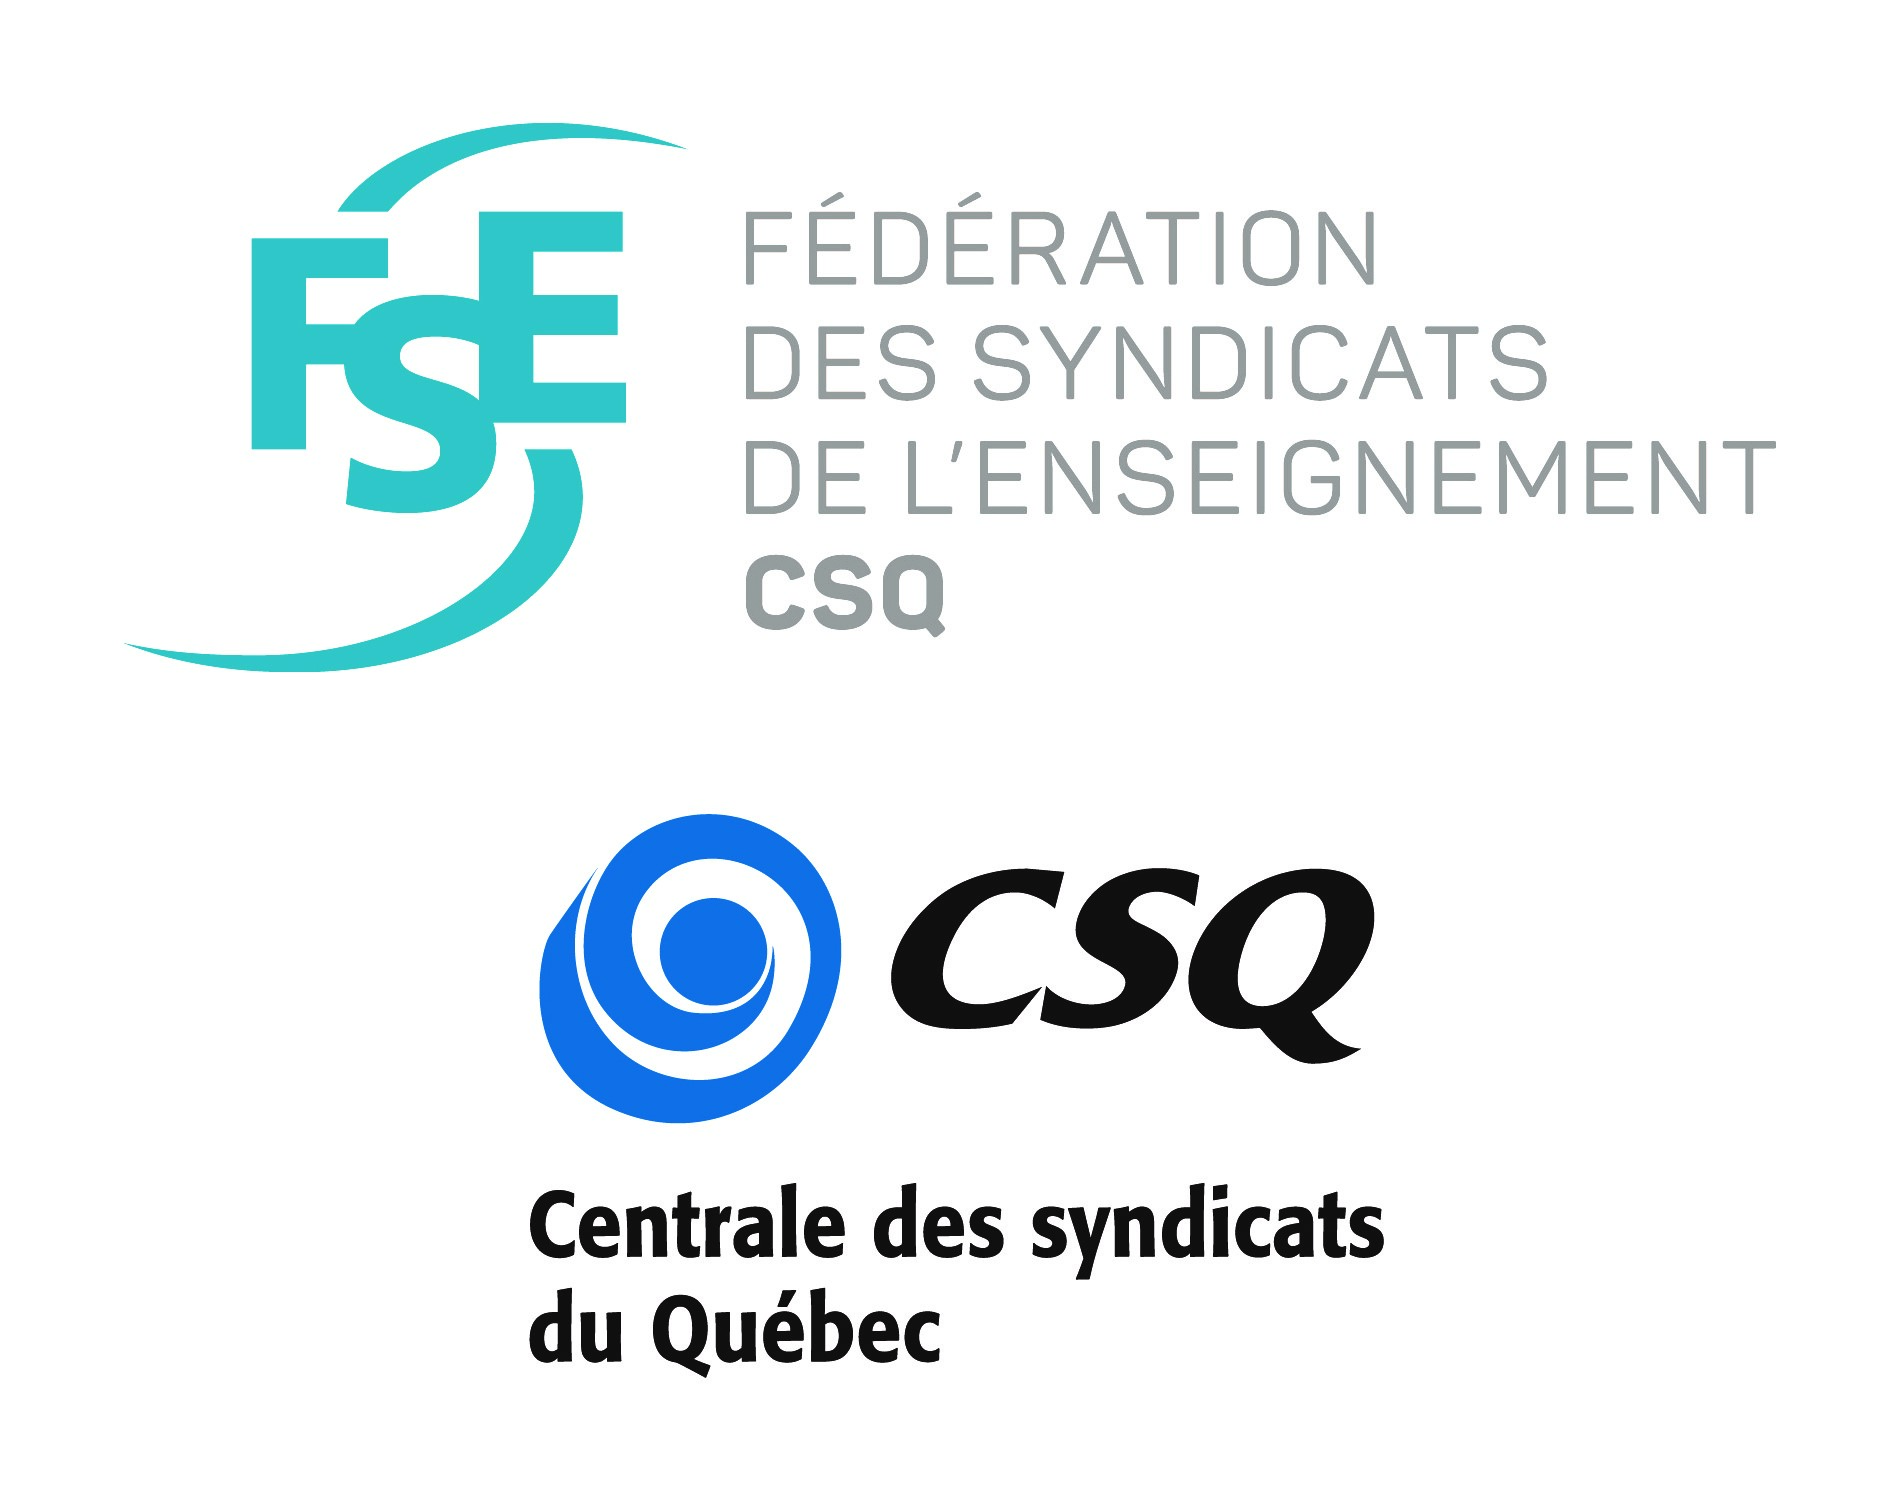 Fédération des syndicats de l'enseignement et Centrale des syndicats du Québec